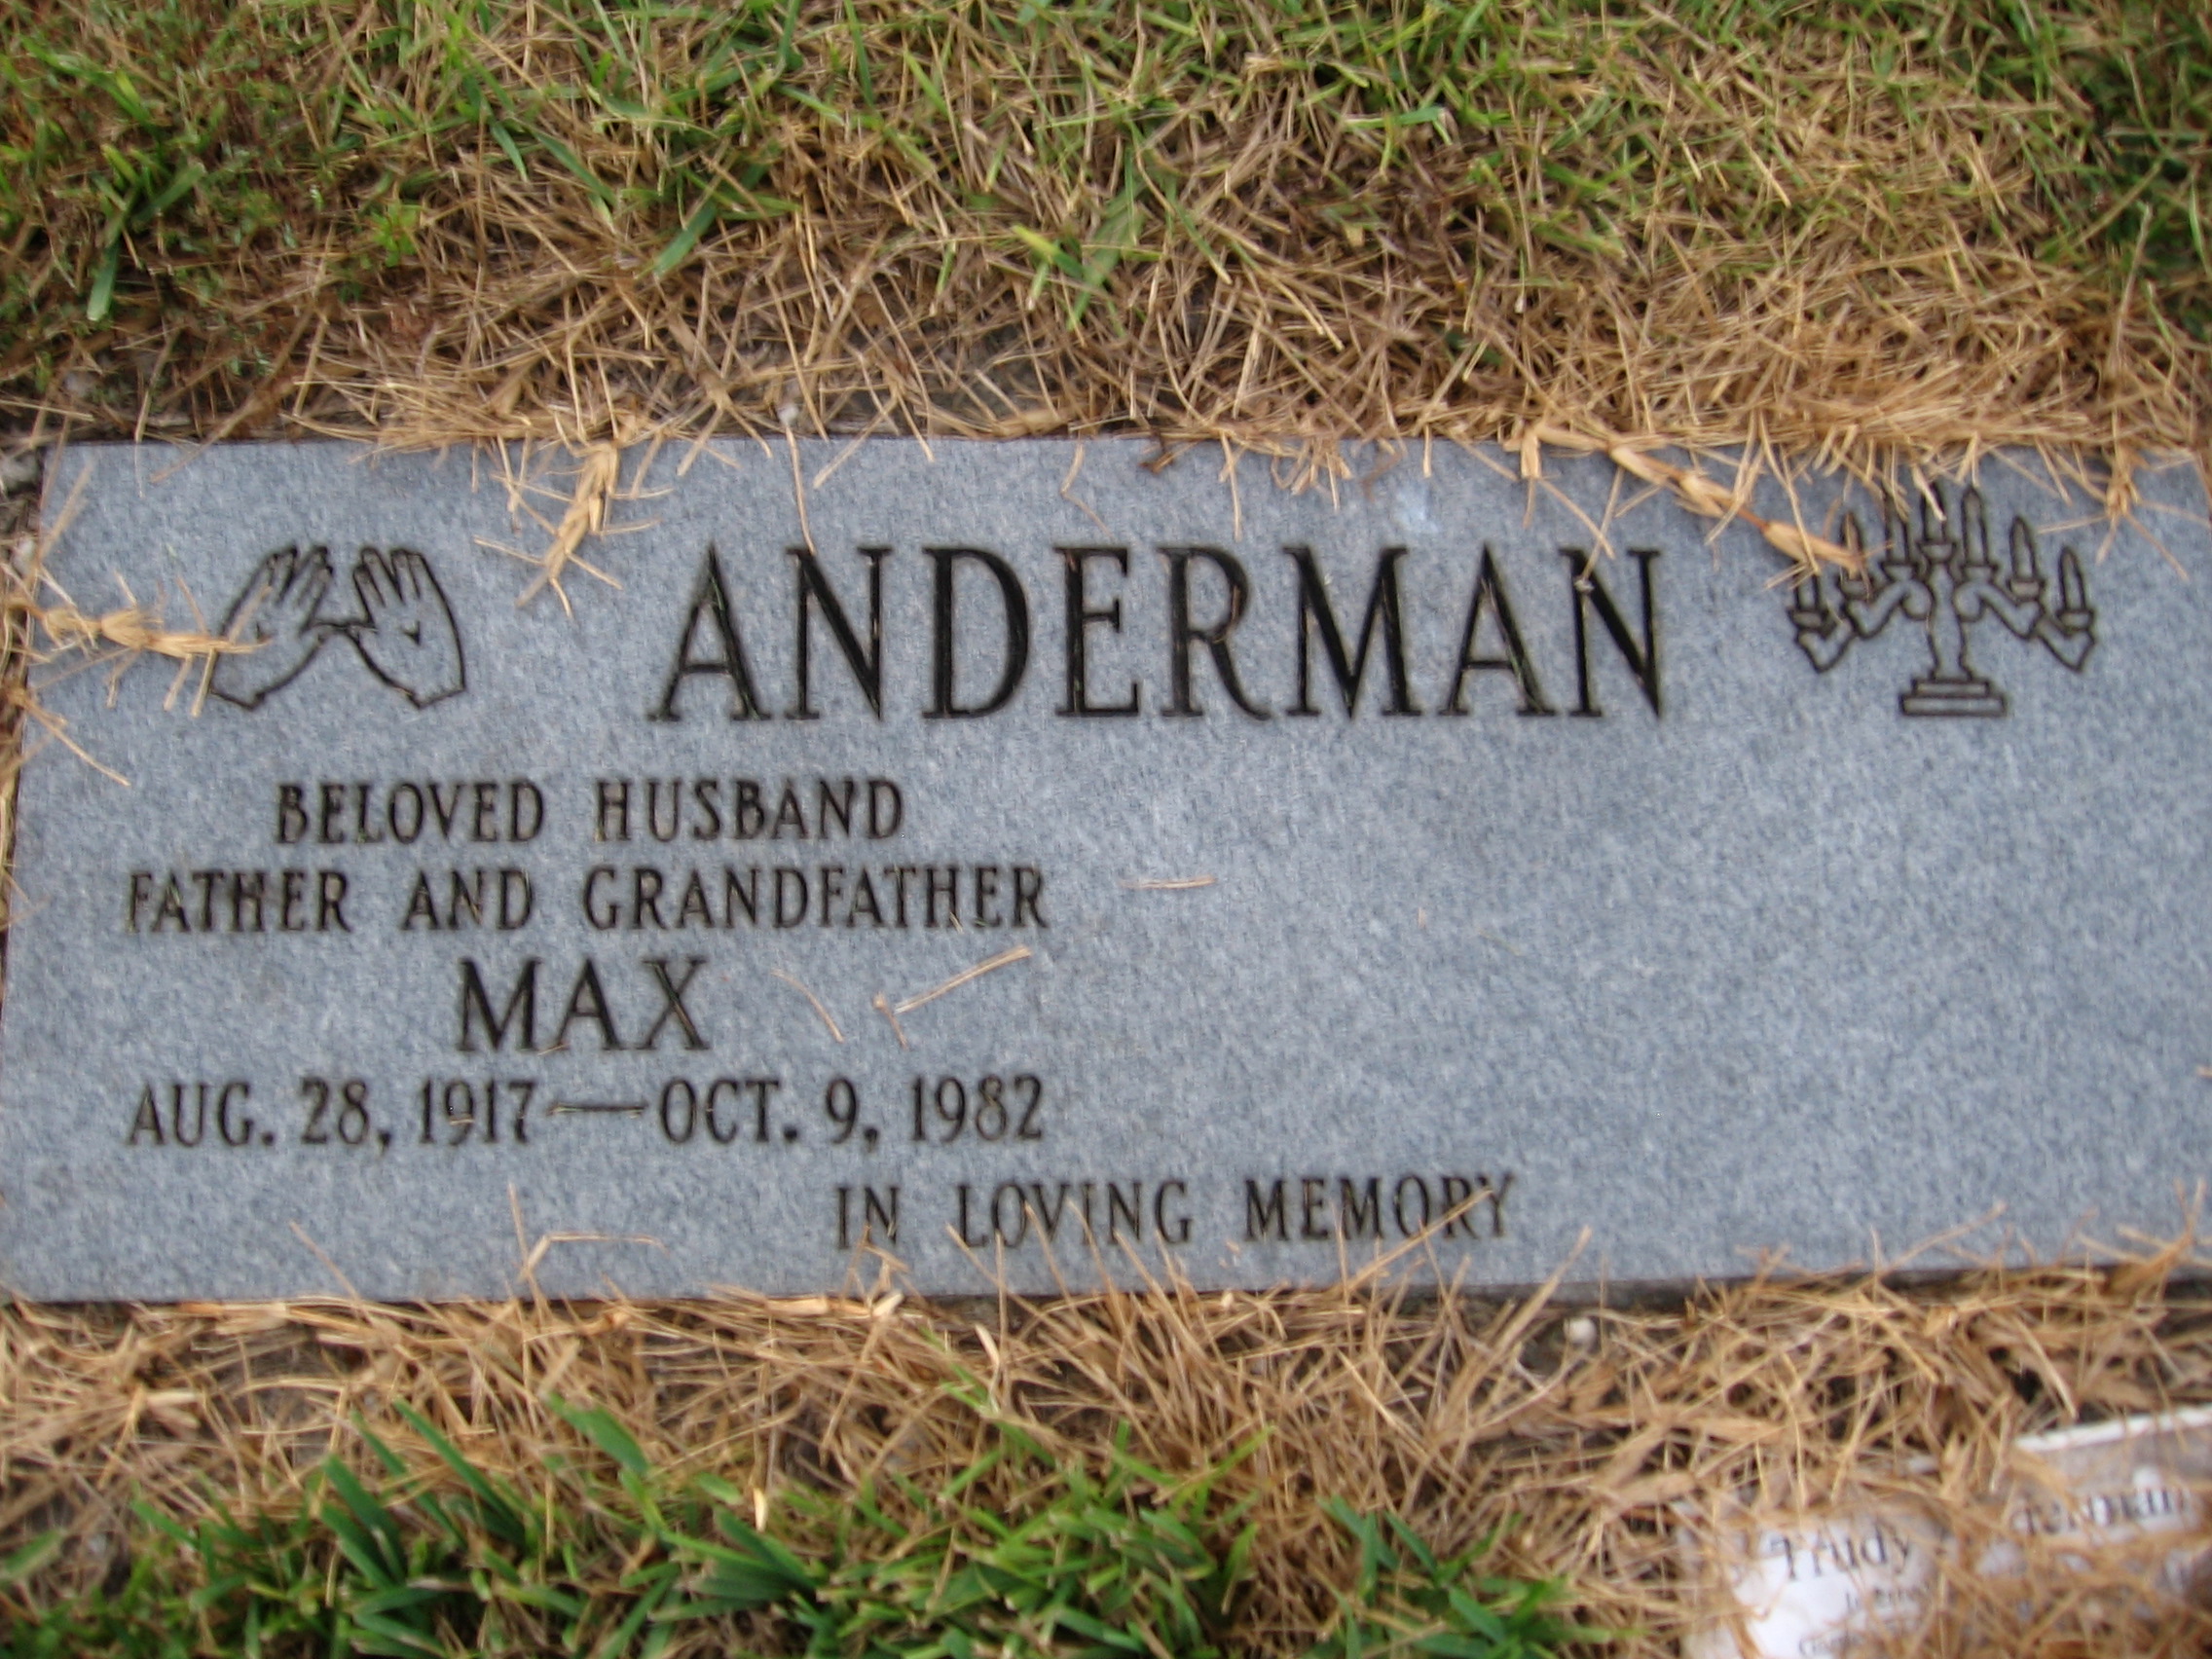 Max Anderman